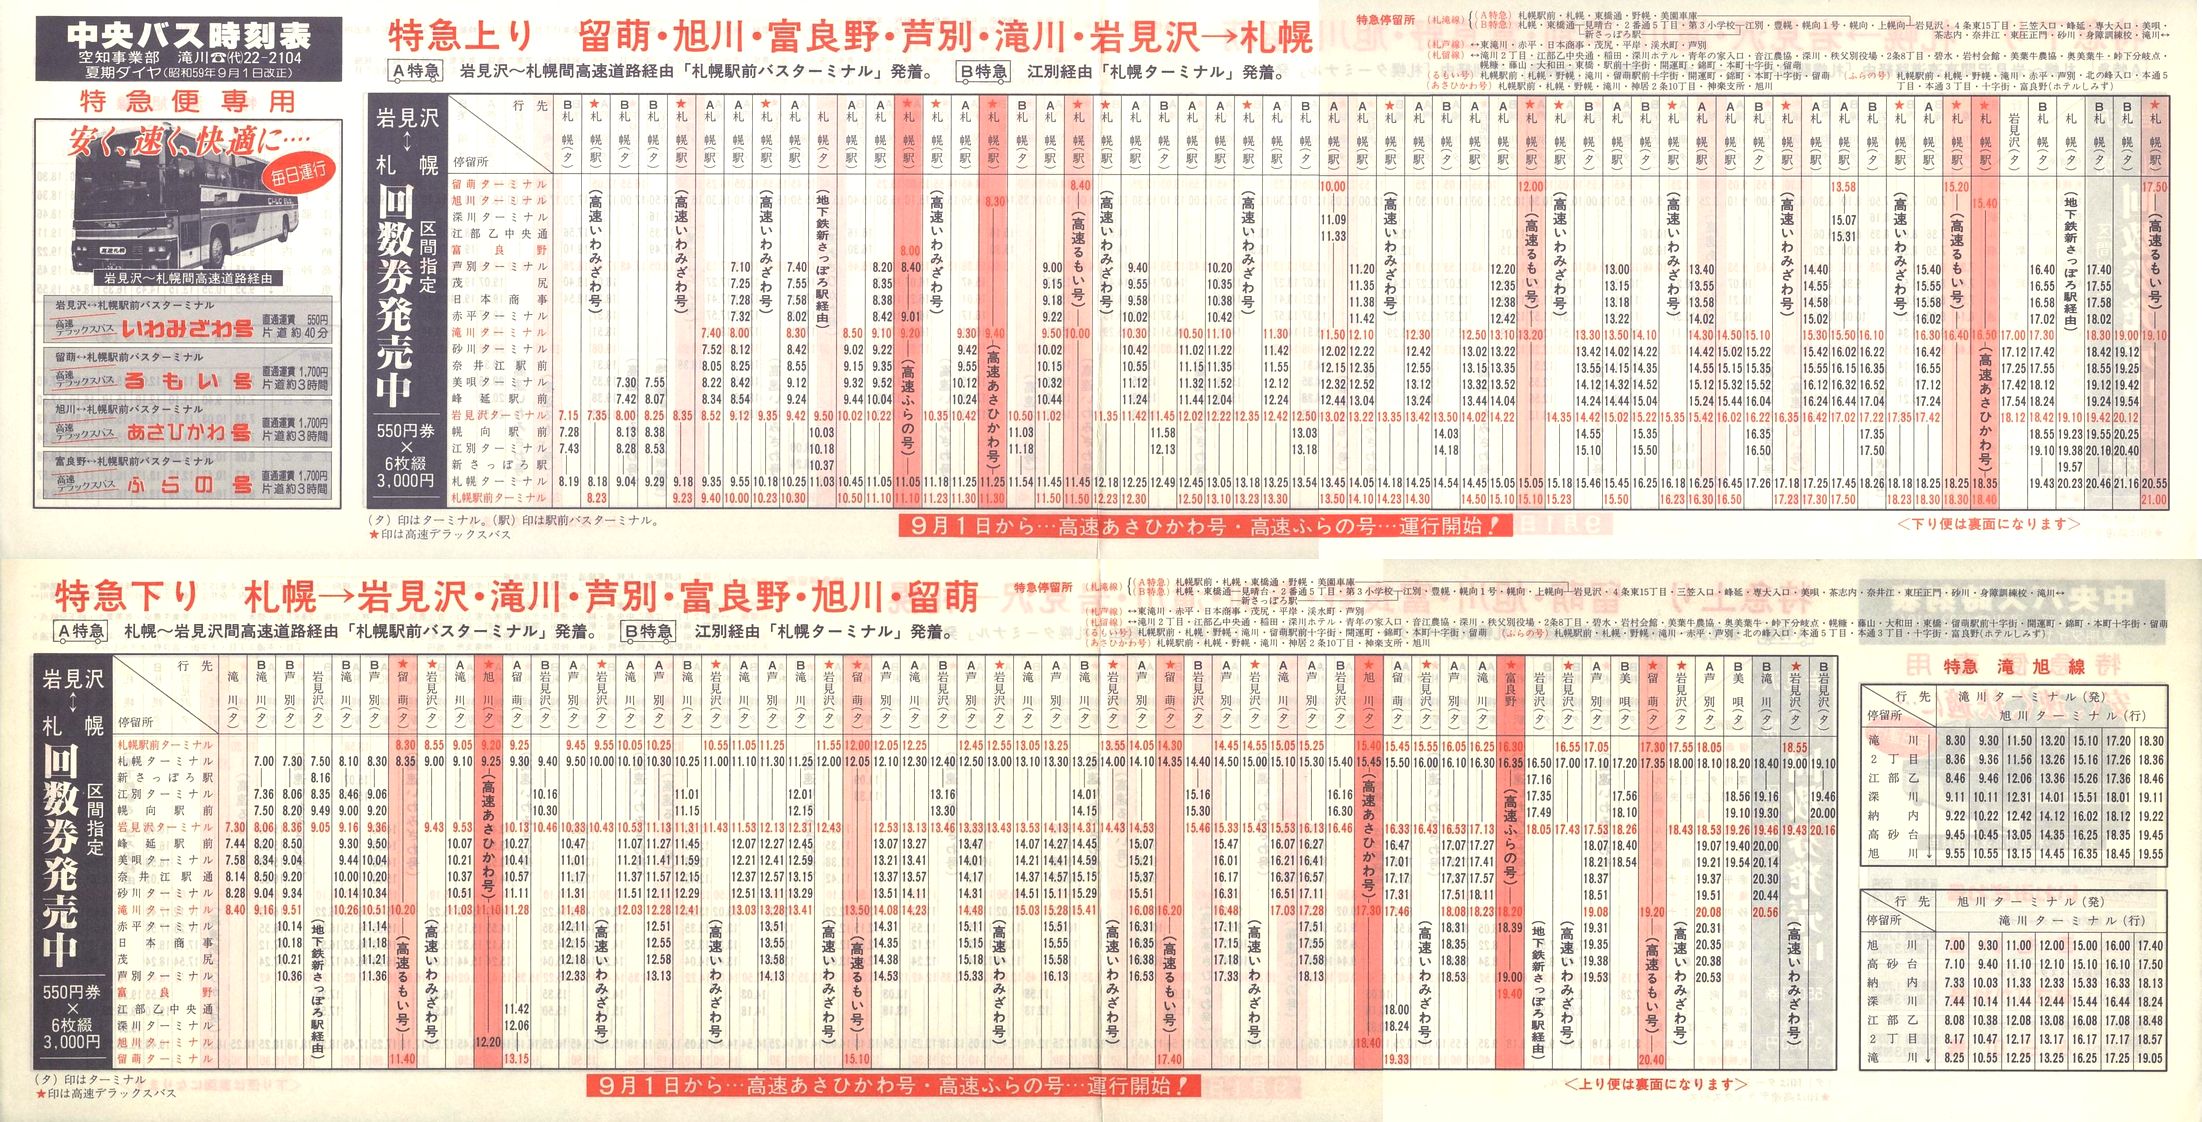 1984-09-01改正_北海道中央バス(空知)_特急便時刻表